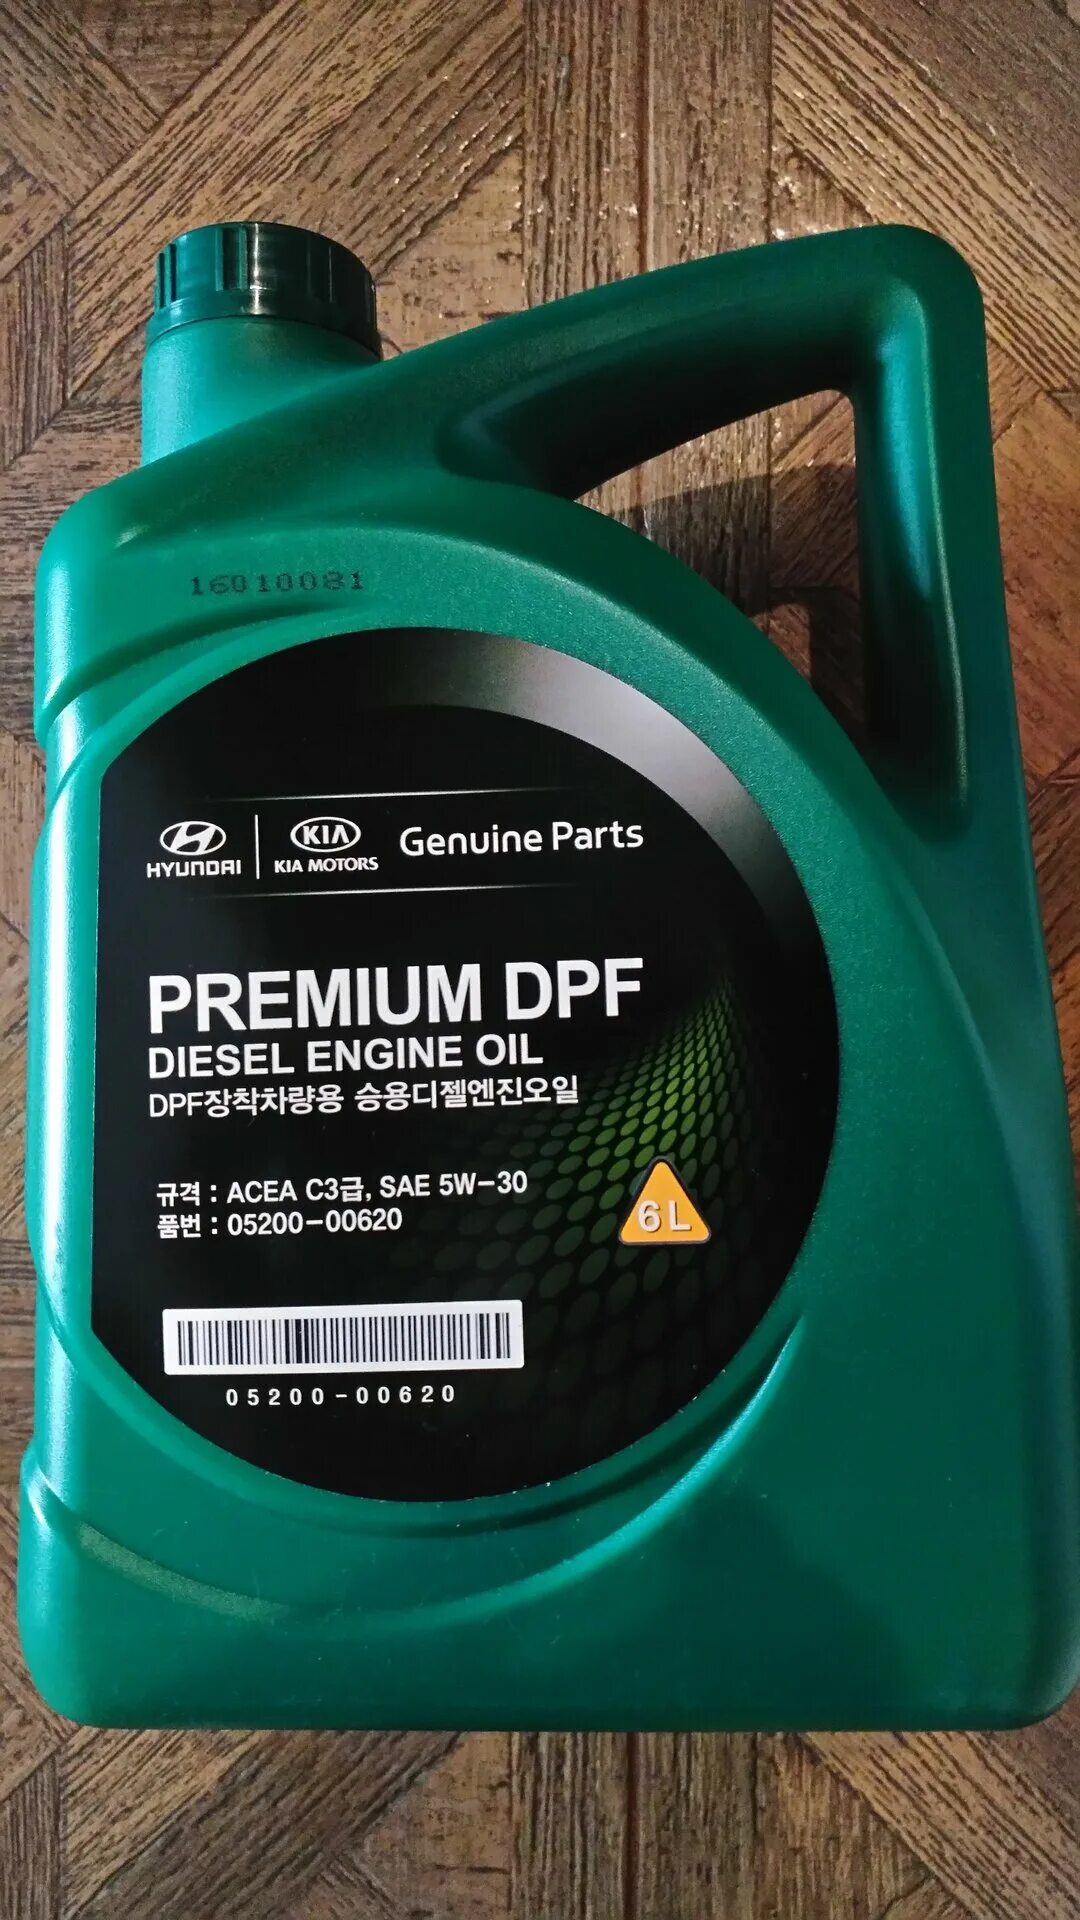 Масло моторное dpf premium. Premium DPF Diesel 5w-30. Масло mobis Premium DPF Diesel 5w-30. Hyundai Kia Premium DPF 5w-30 6 л. Mobis Premium DPF Diesel 5w-30, 6 n.